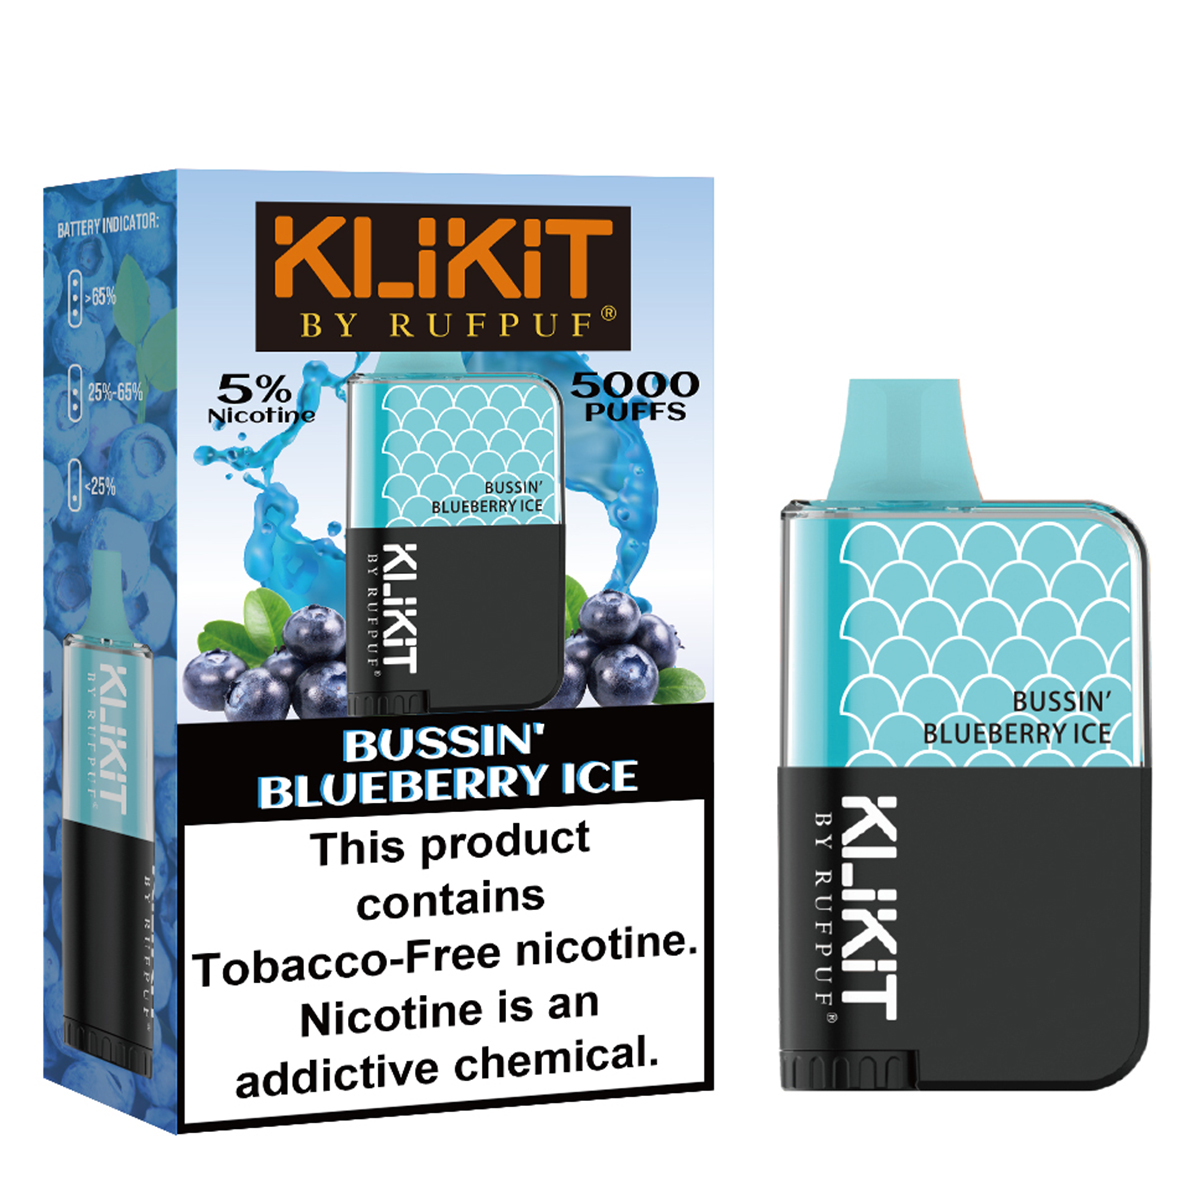 Bussin'-Blueberry-Ice 5000 (Full Kit)